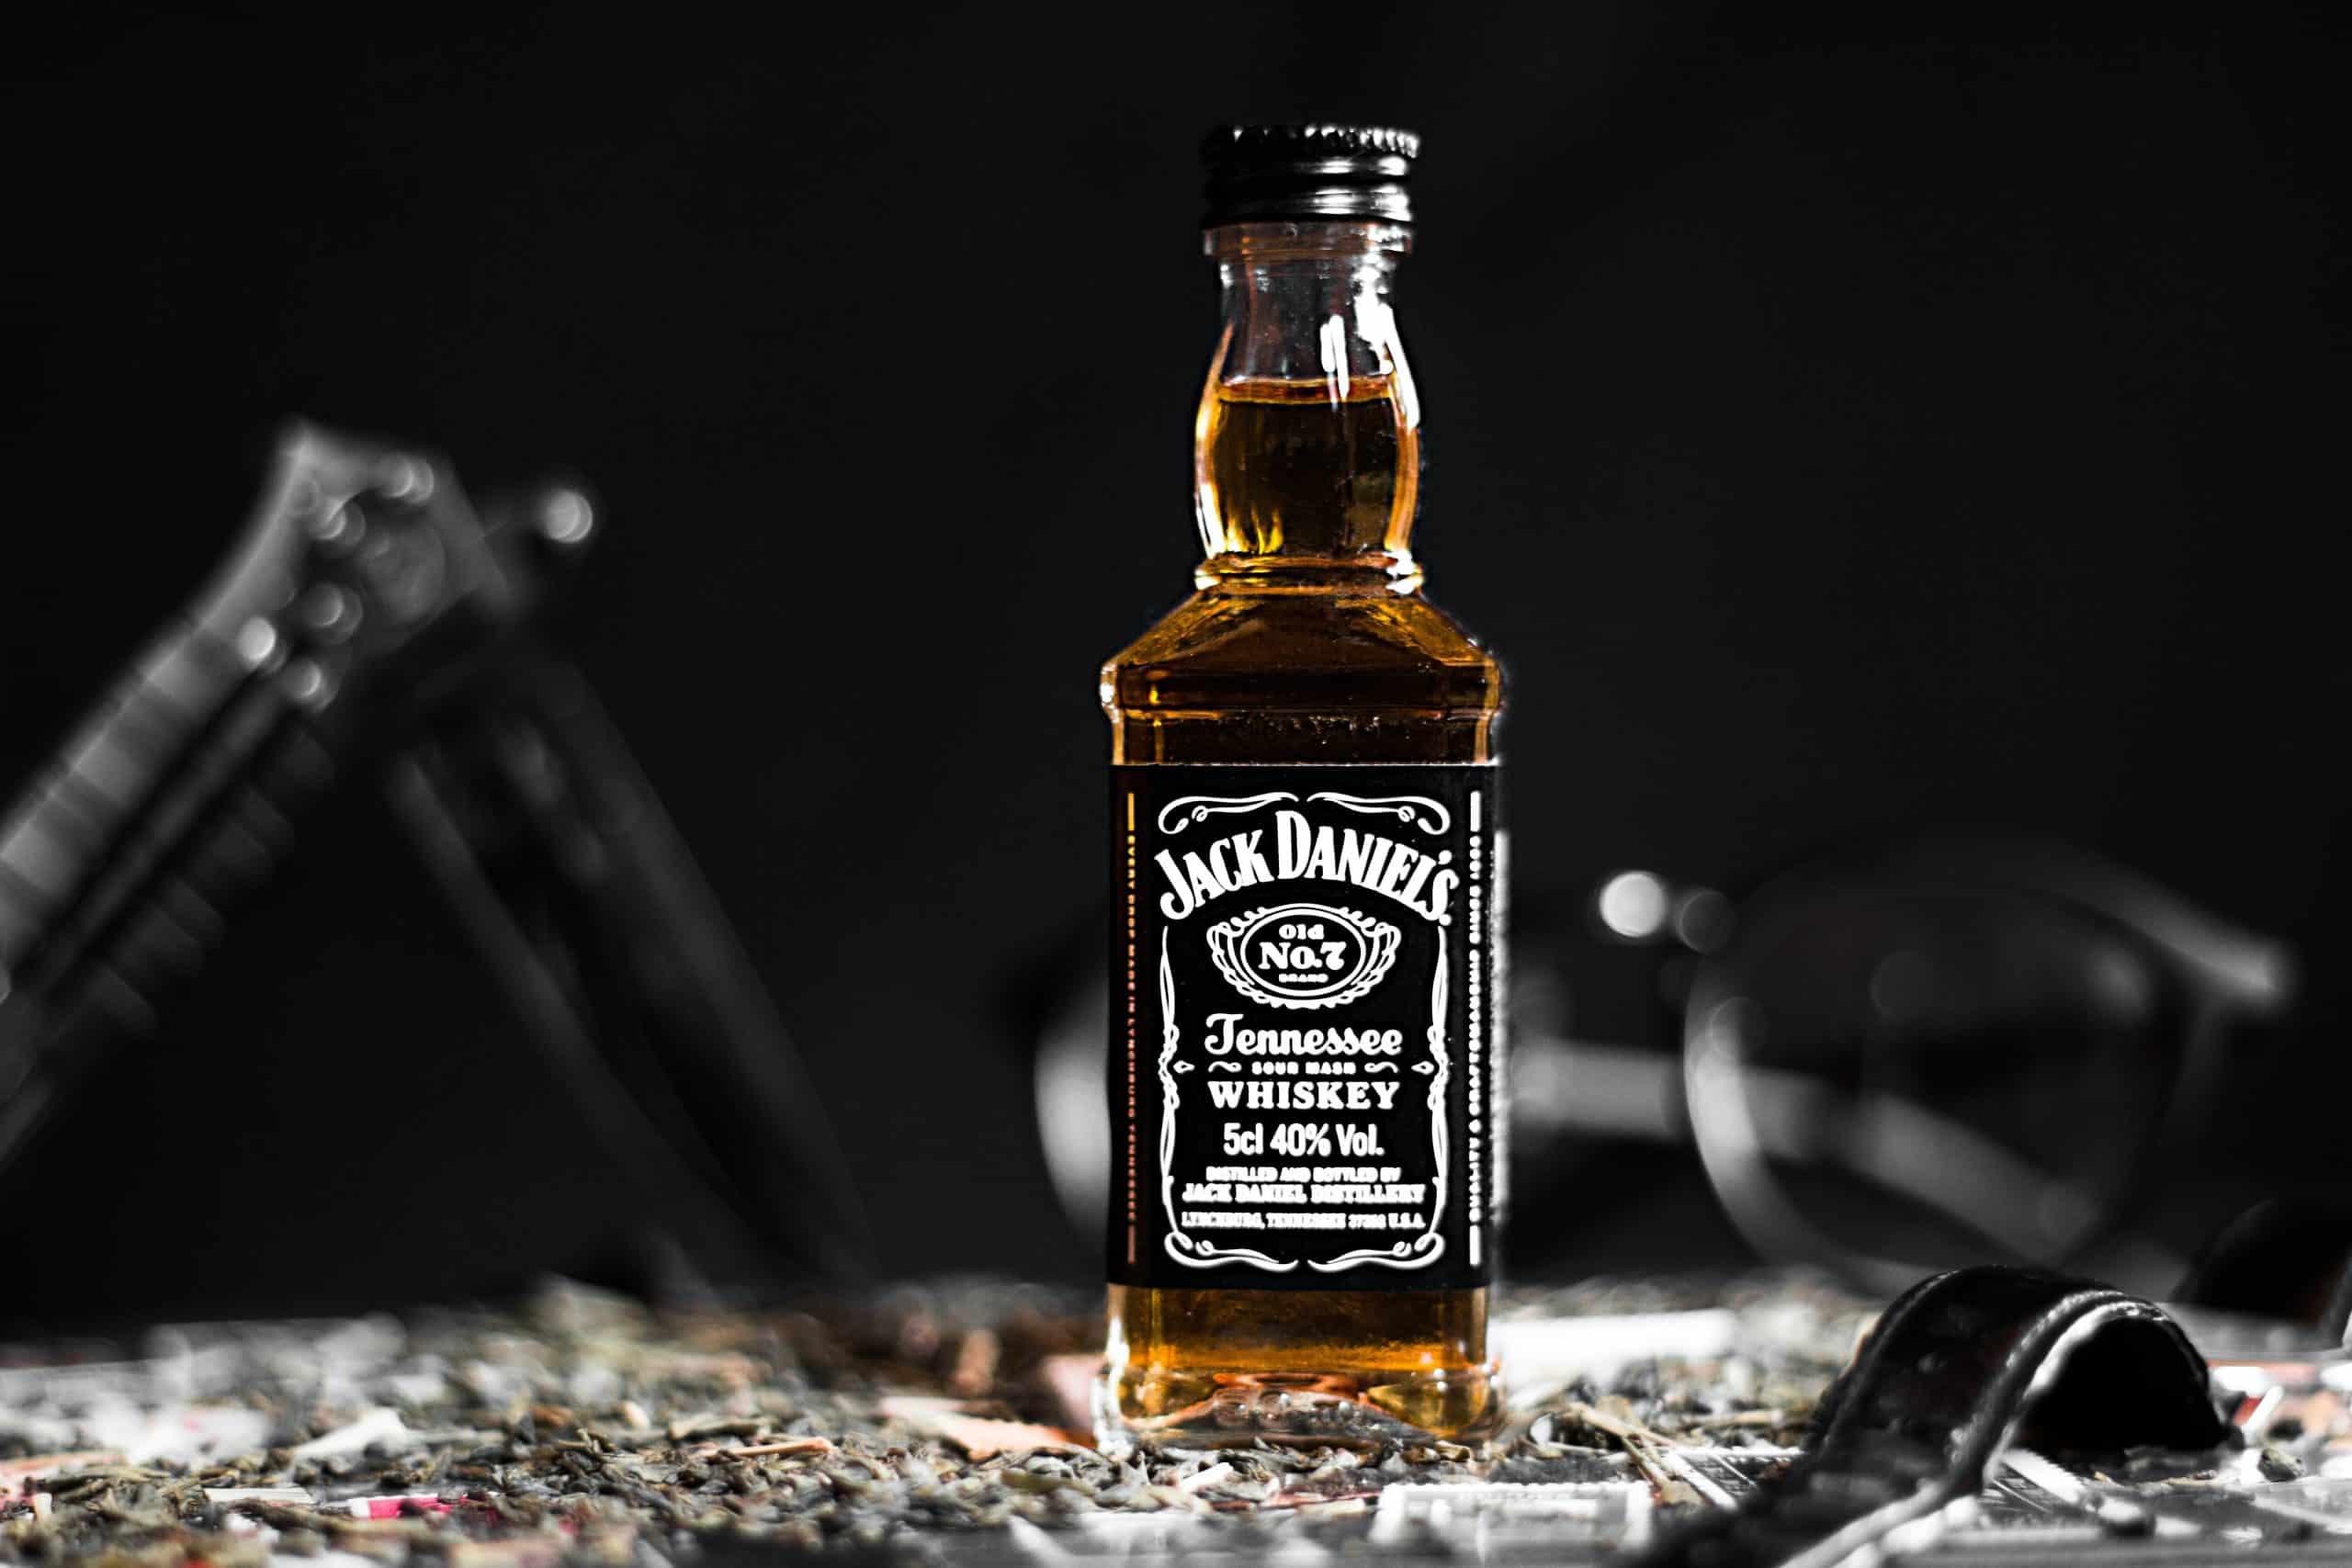 Jack Daniel's Tennessee Whiskey Co. cherche à se lancer dans les NFT